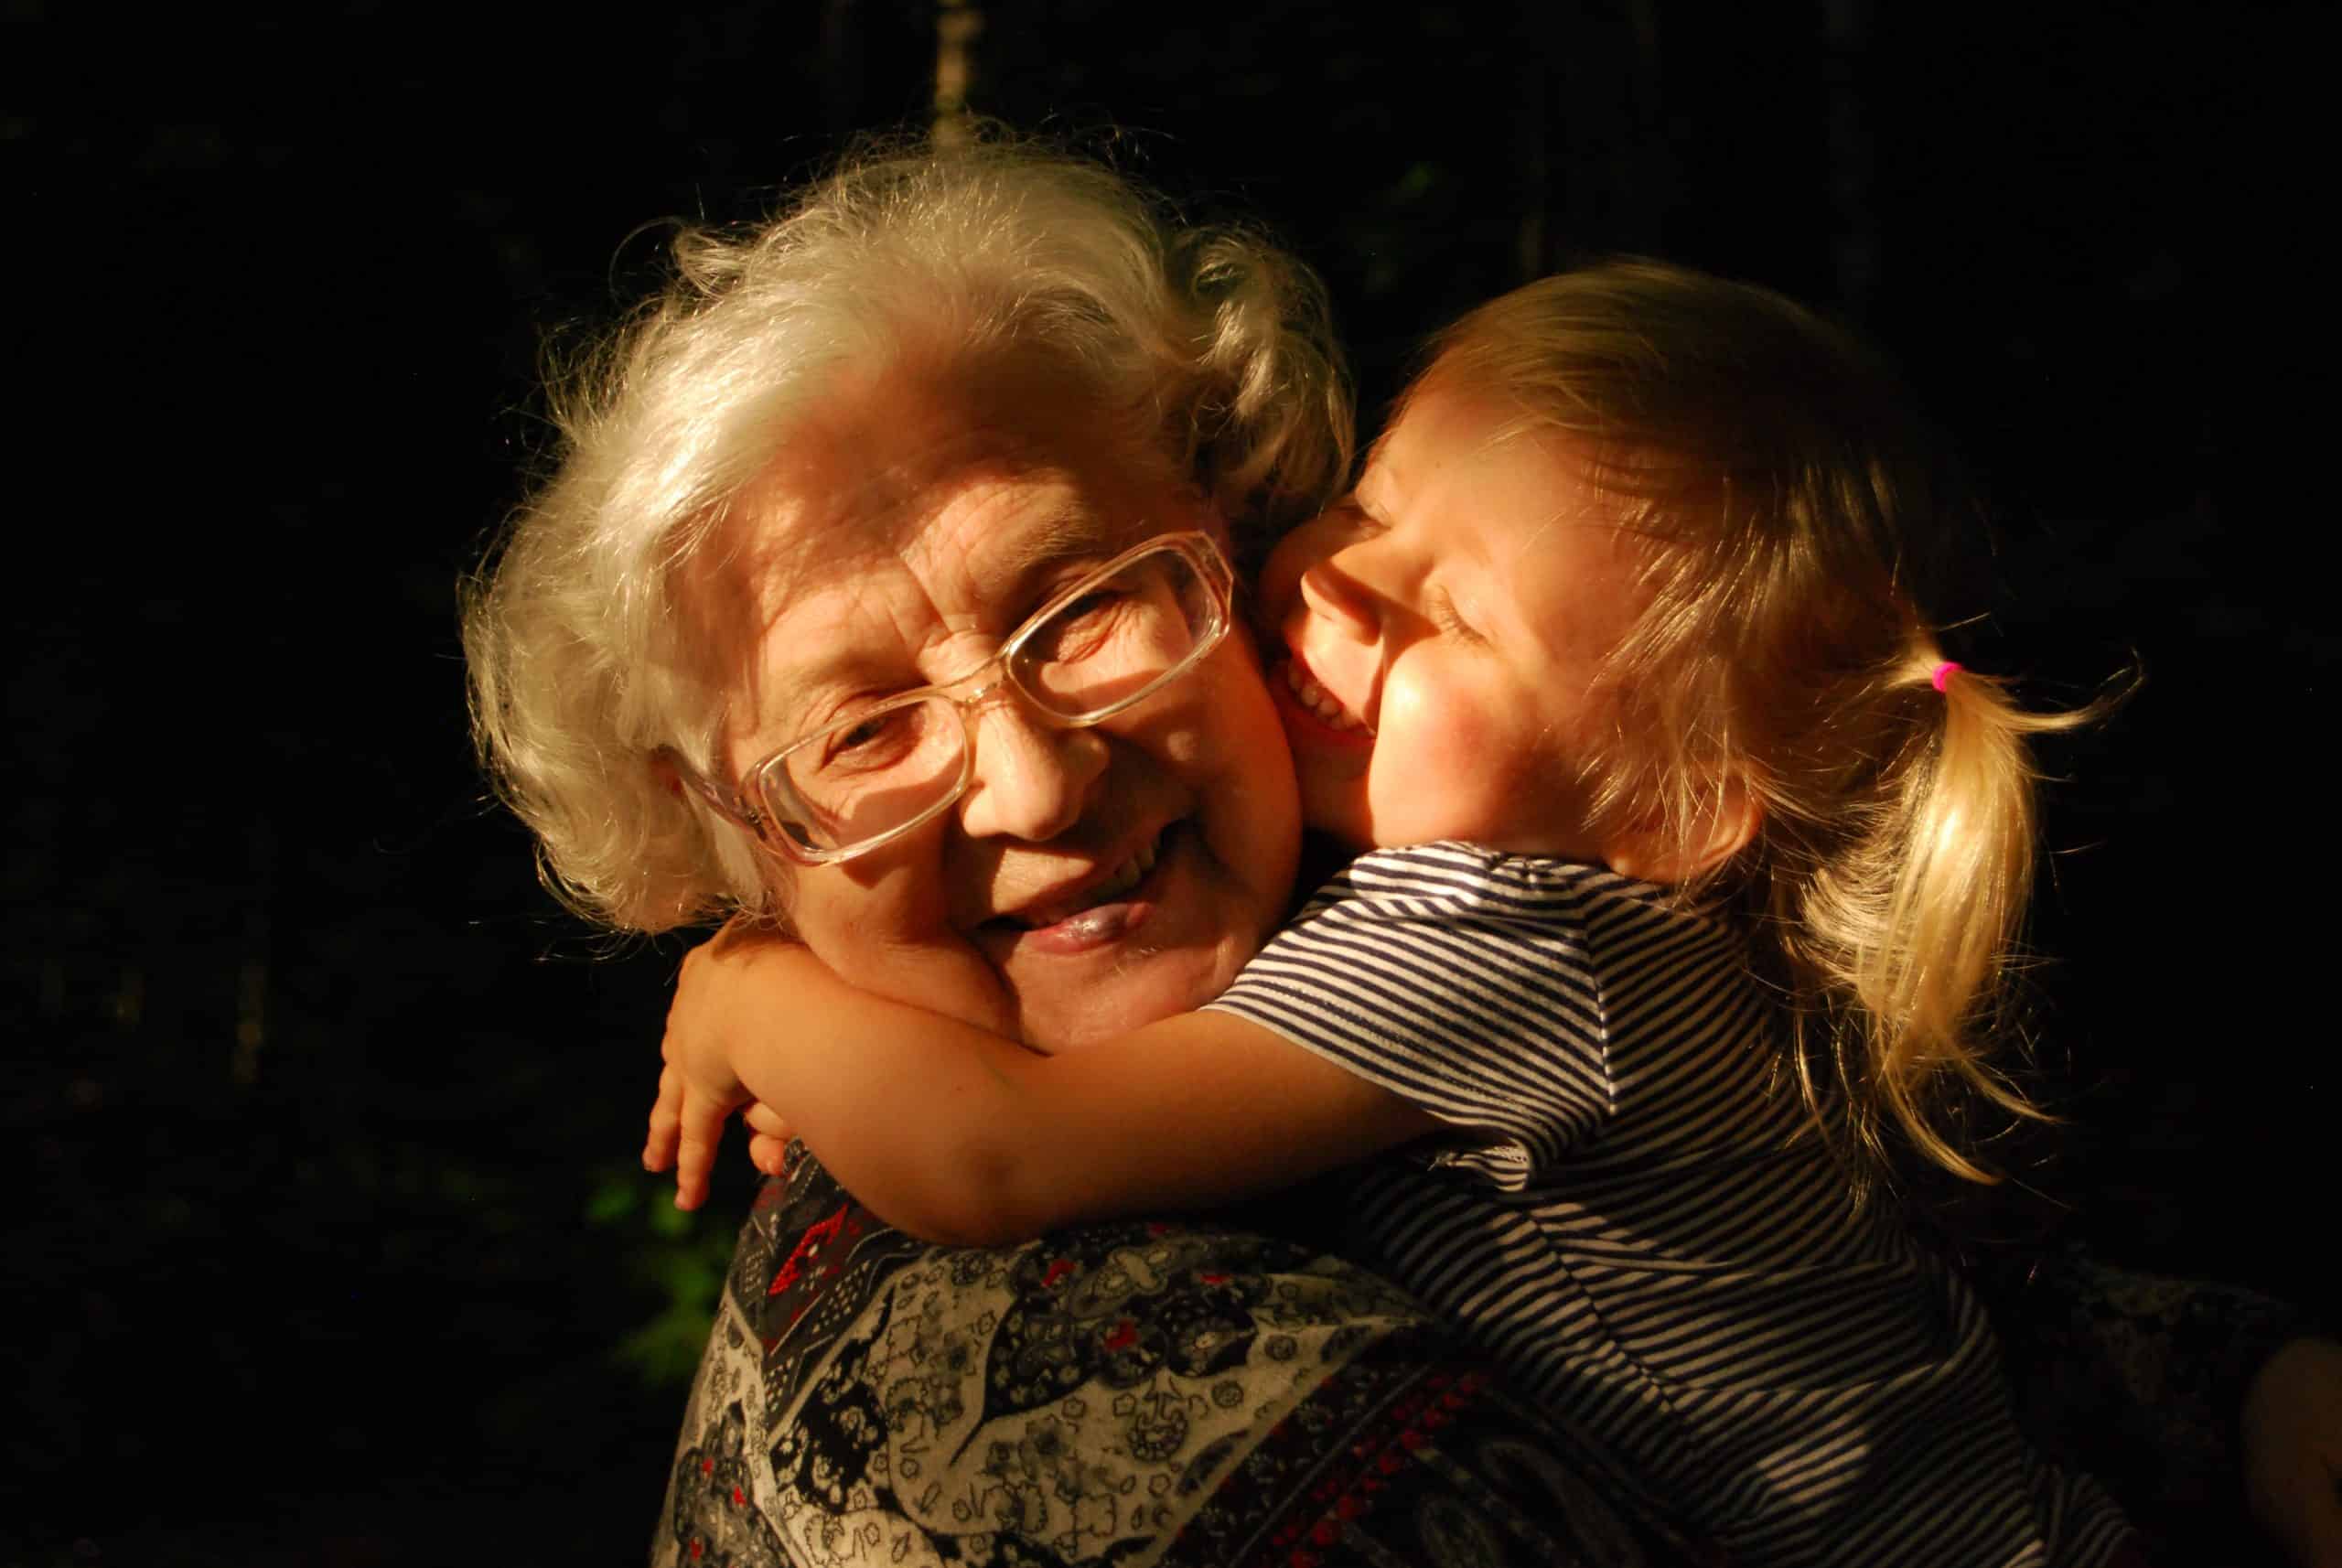 grandma with her grandchild 